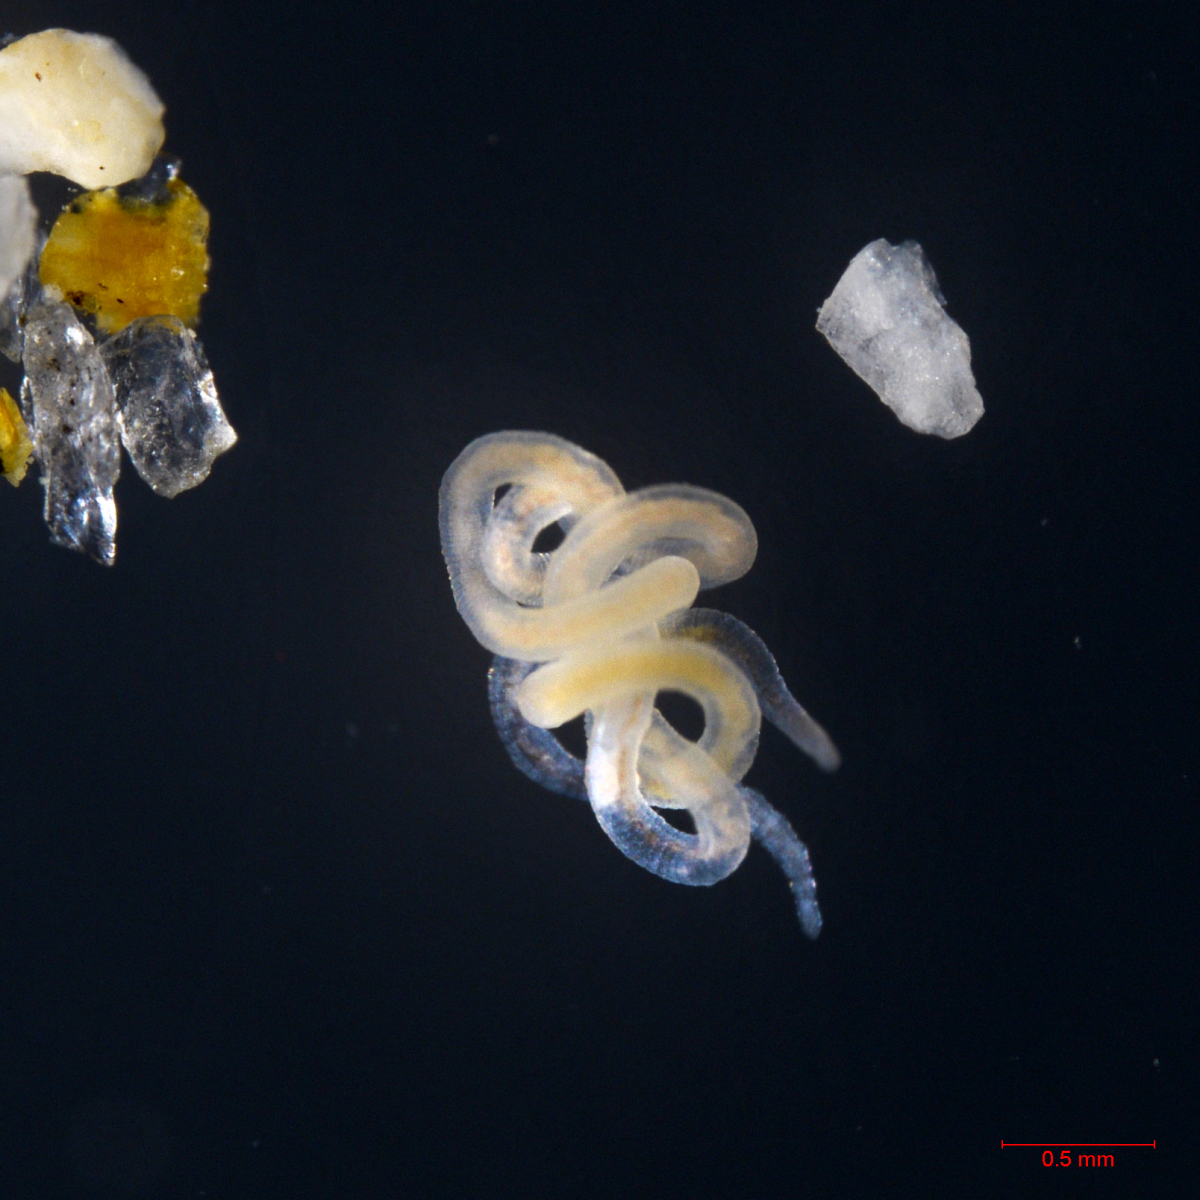 Olavius unterm Mikroskop (© Max-Planck-Institut für Marine Mikrobiologie/ S. Paulsen)